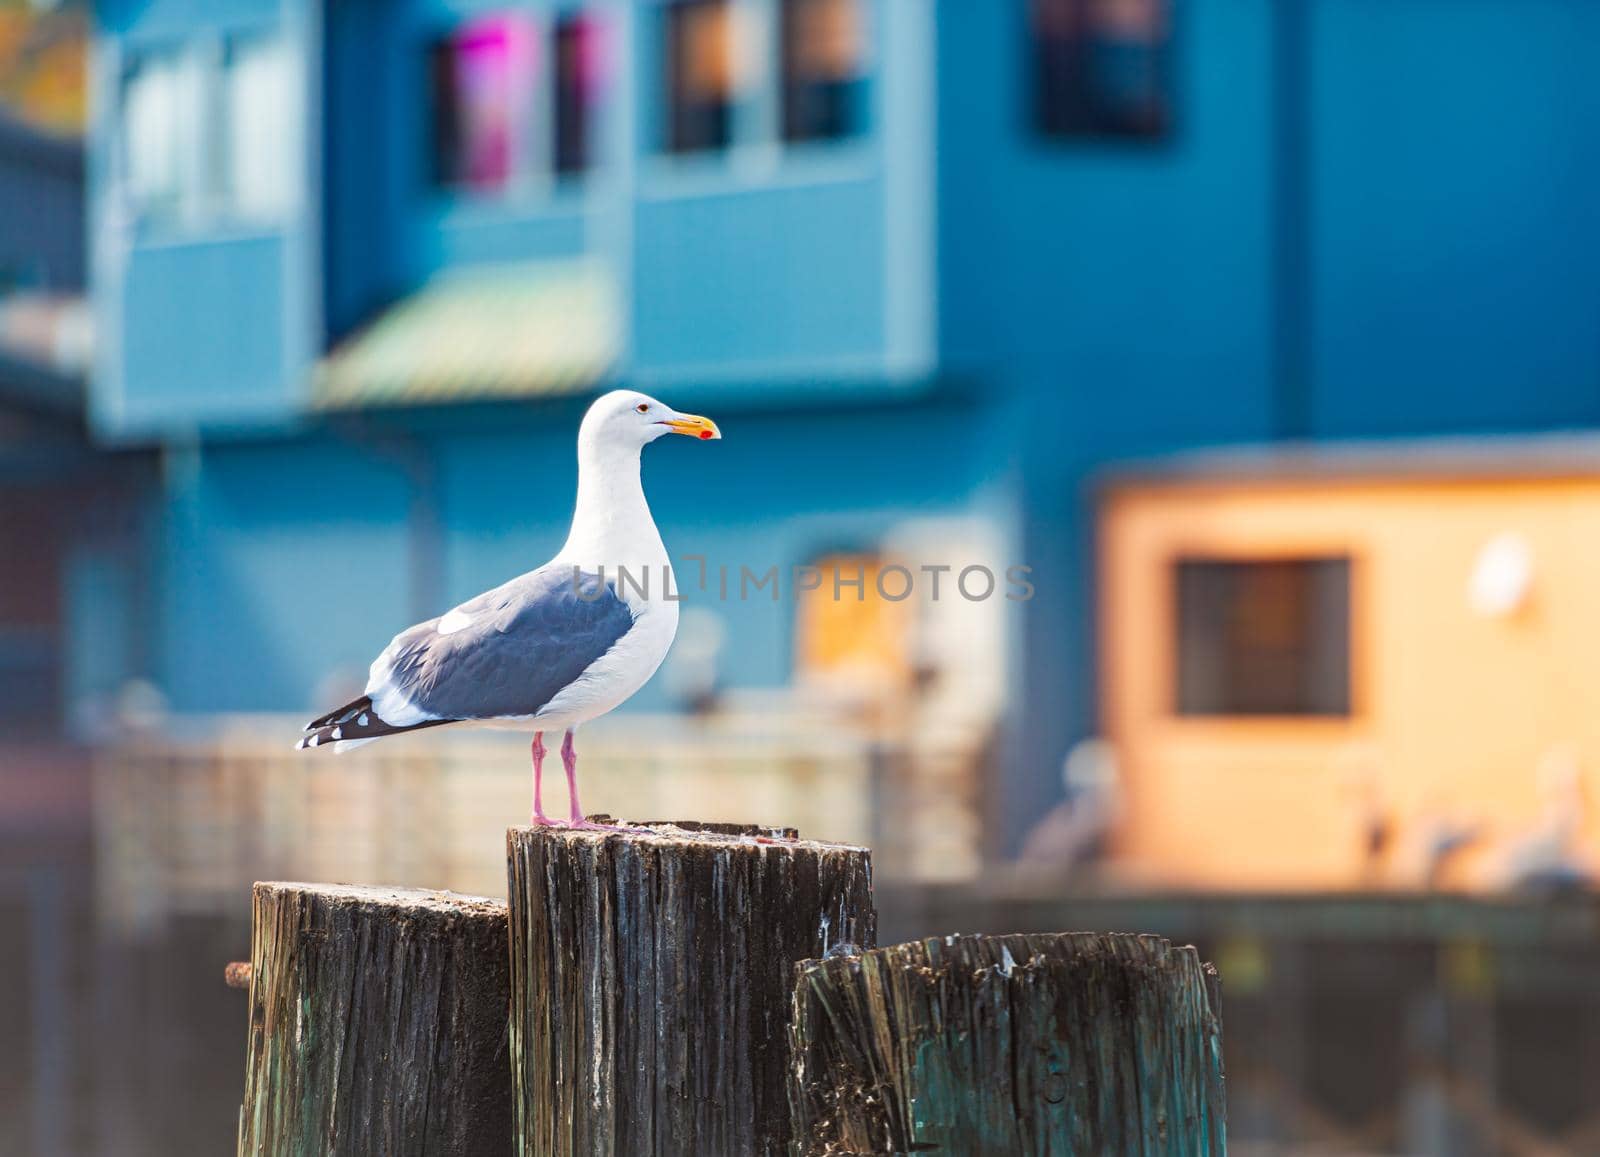 Seagull on tree trunk in Monterey by Yolshin